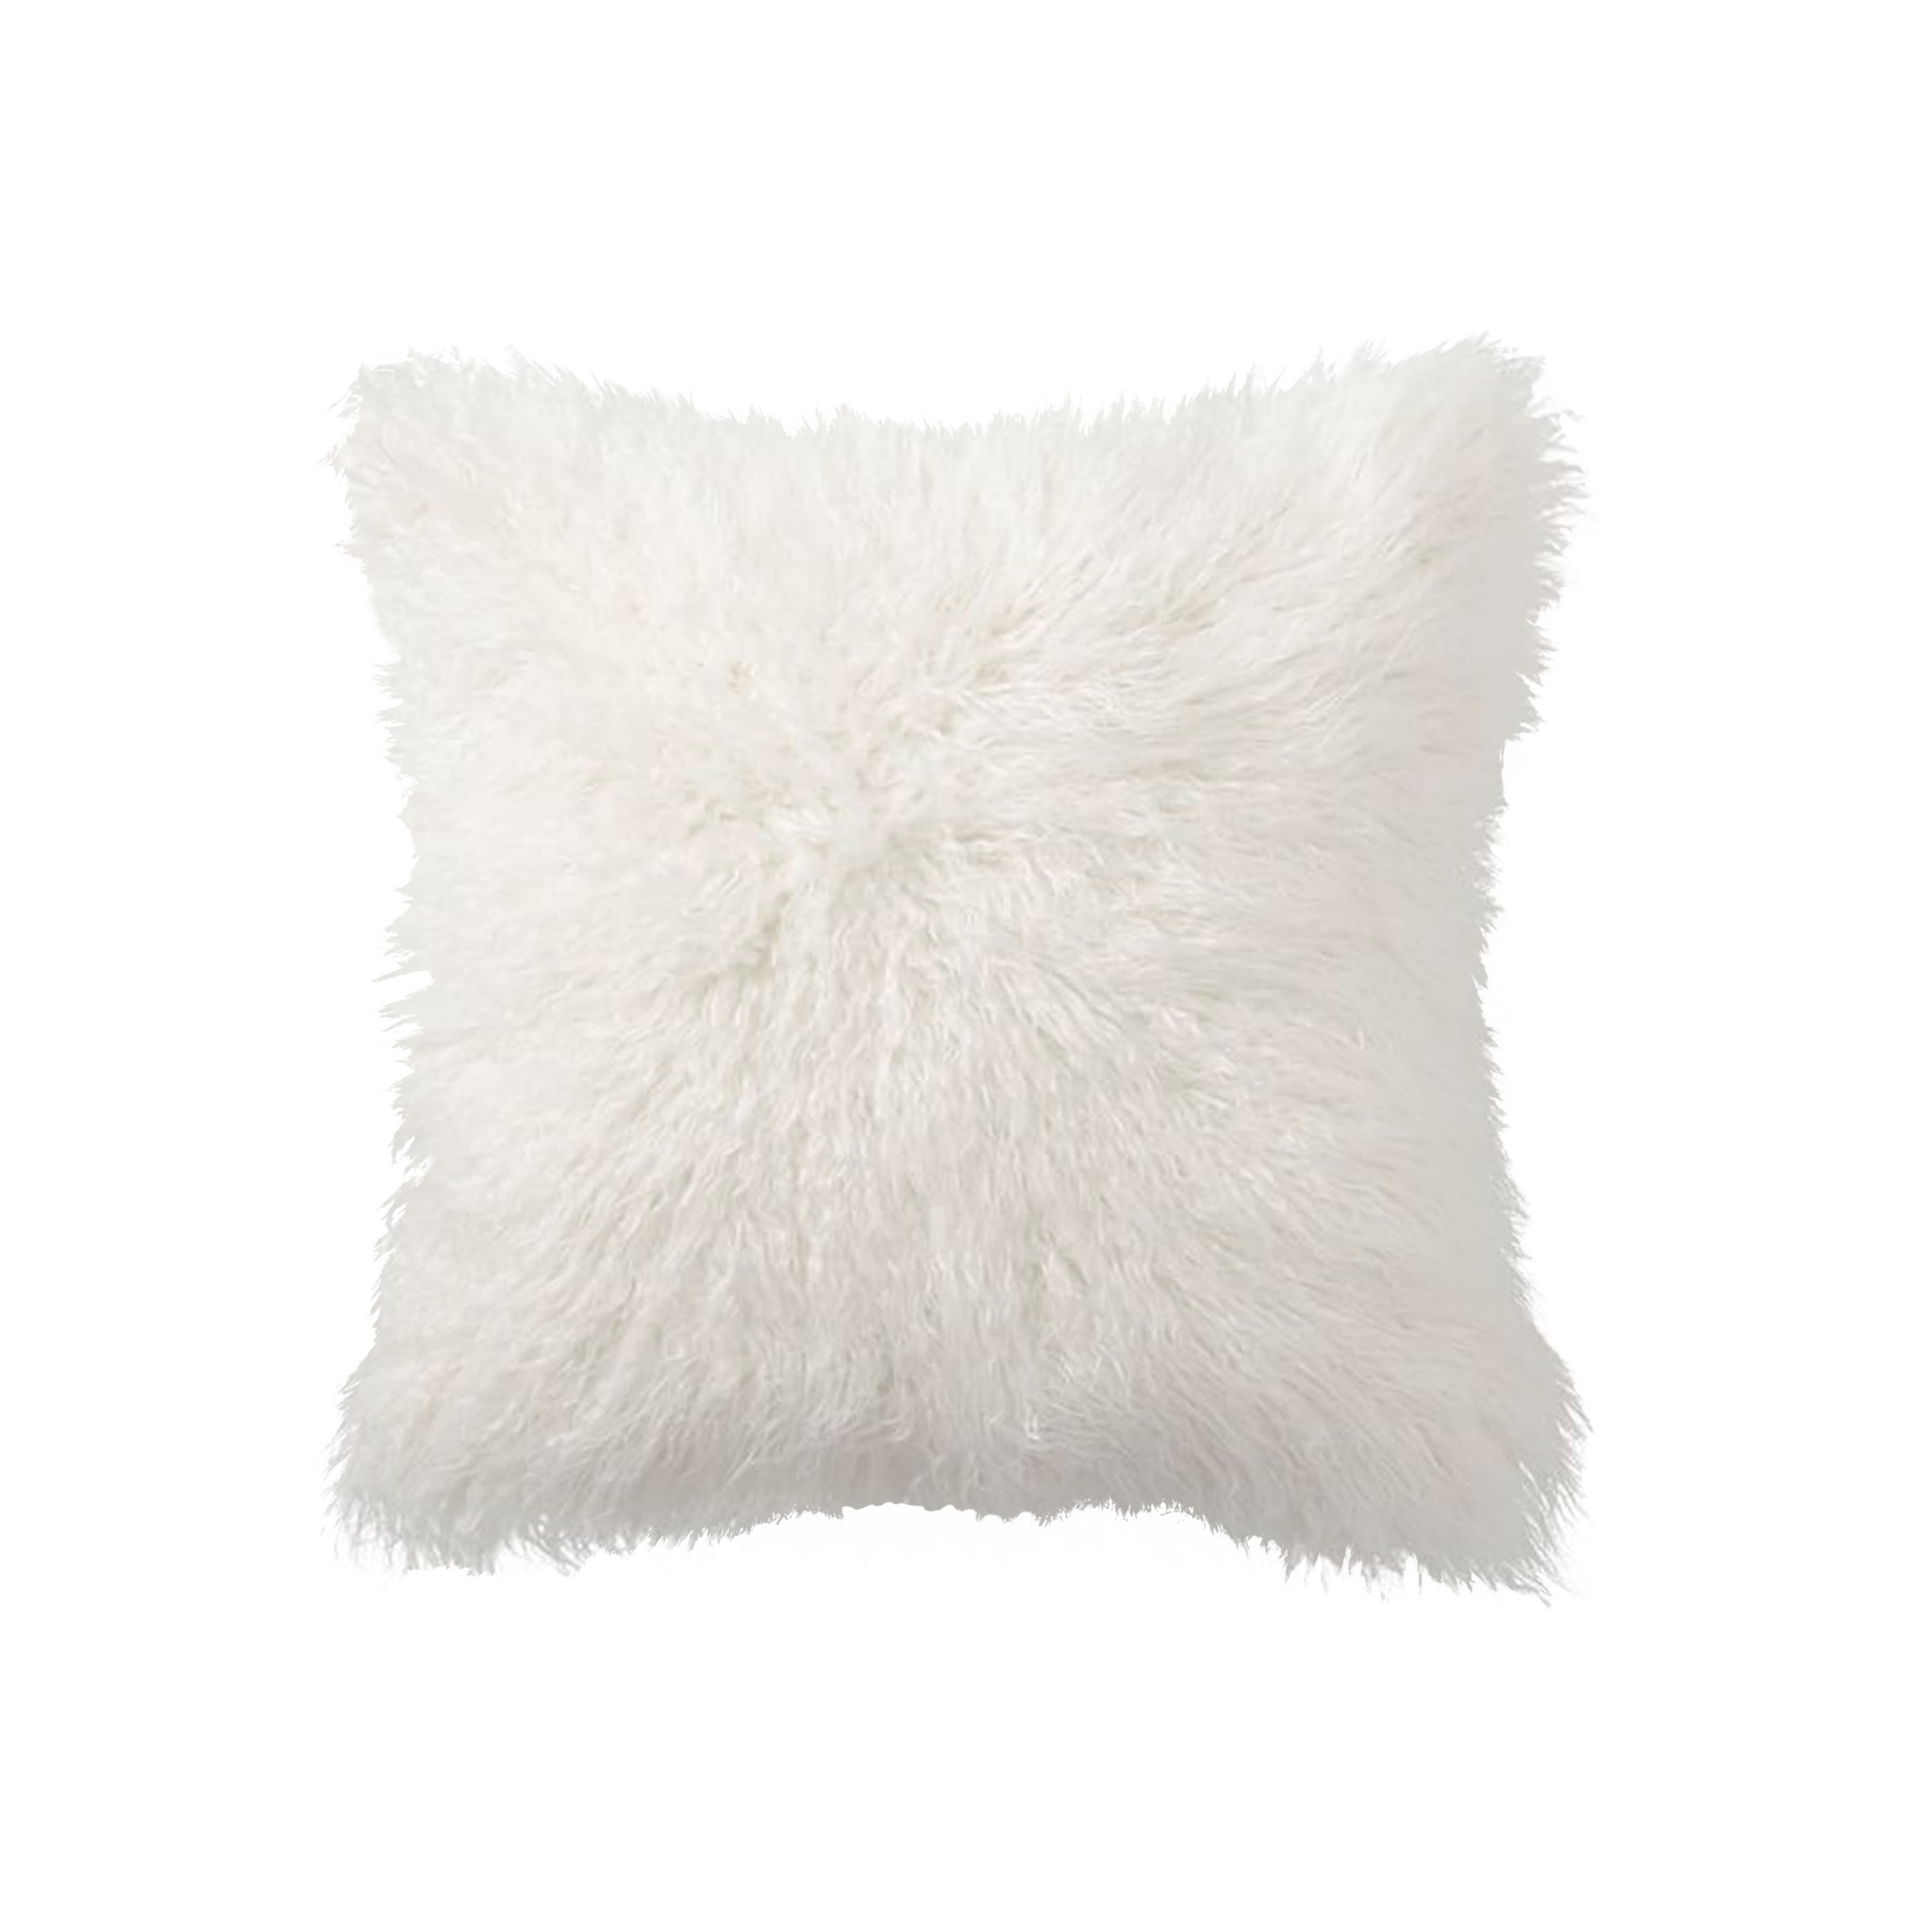 18" x 18" x 5" Off White Faux Fur - Pillow